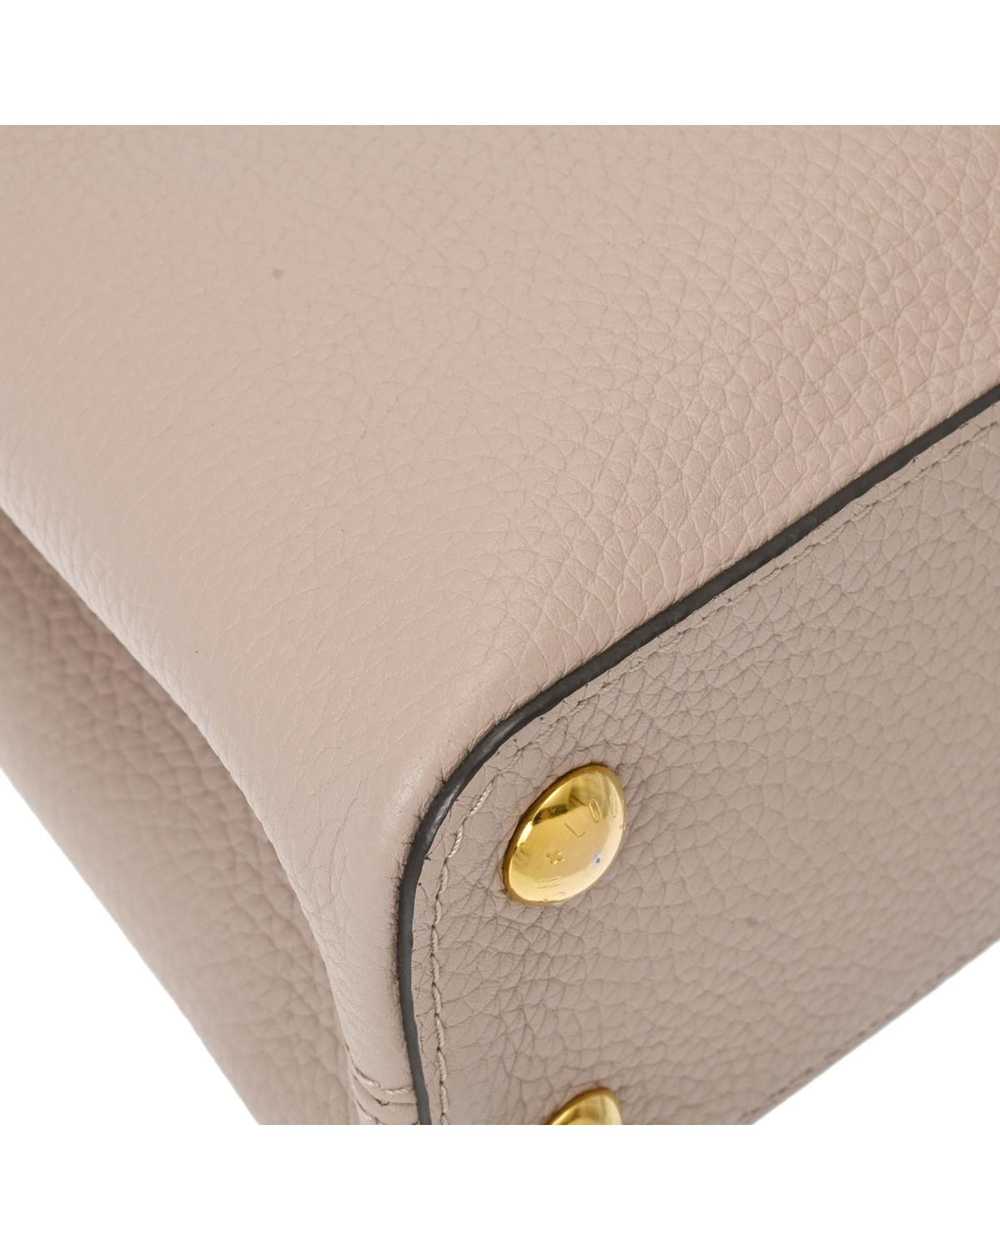 Louis Vuitton Sophisticated Leather Flap Handbag - image 6